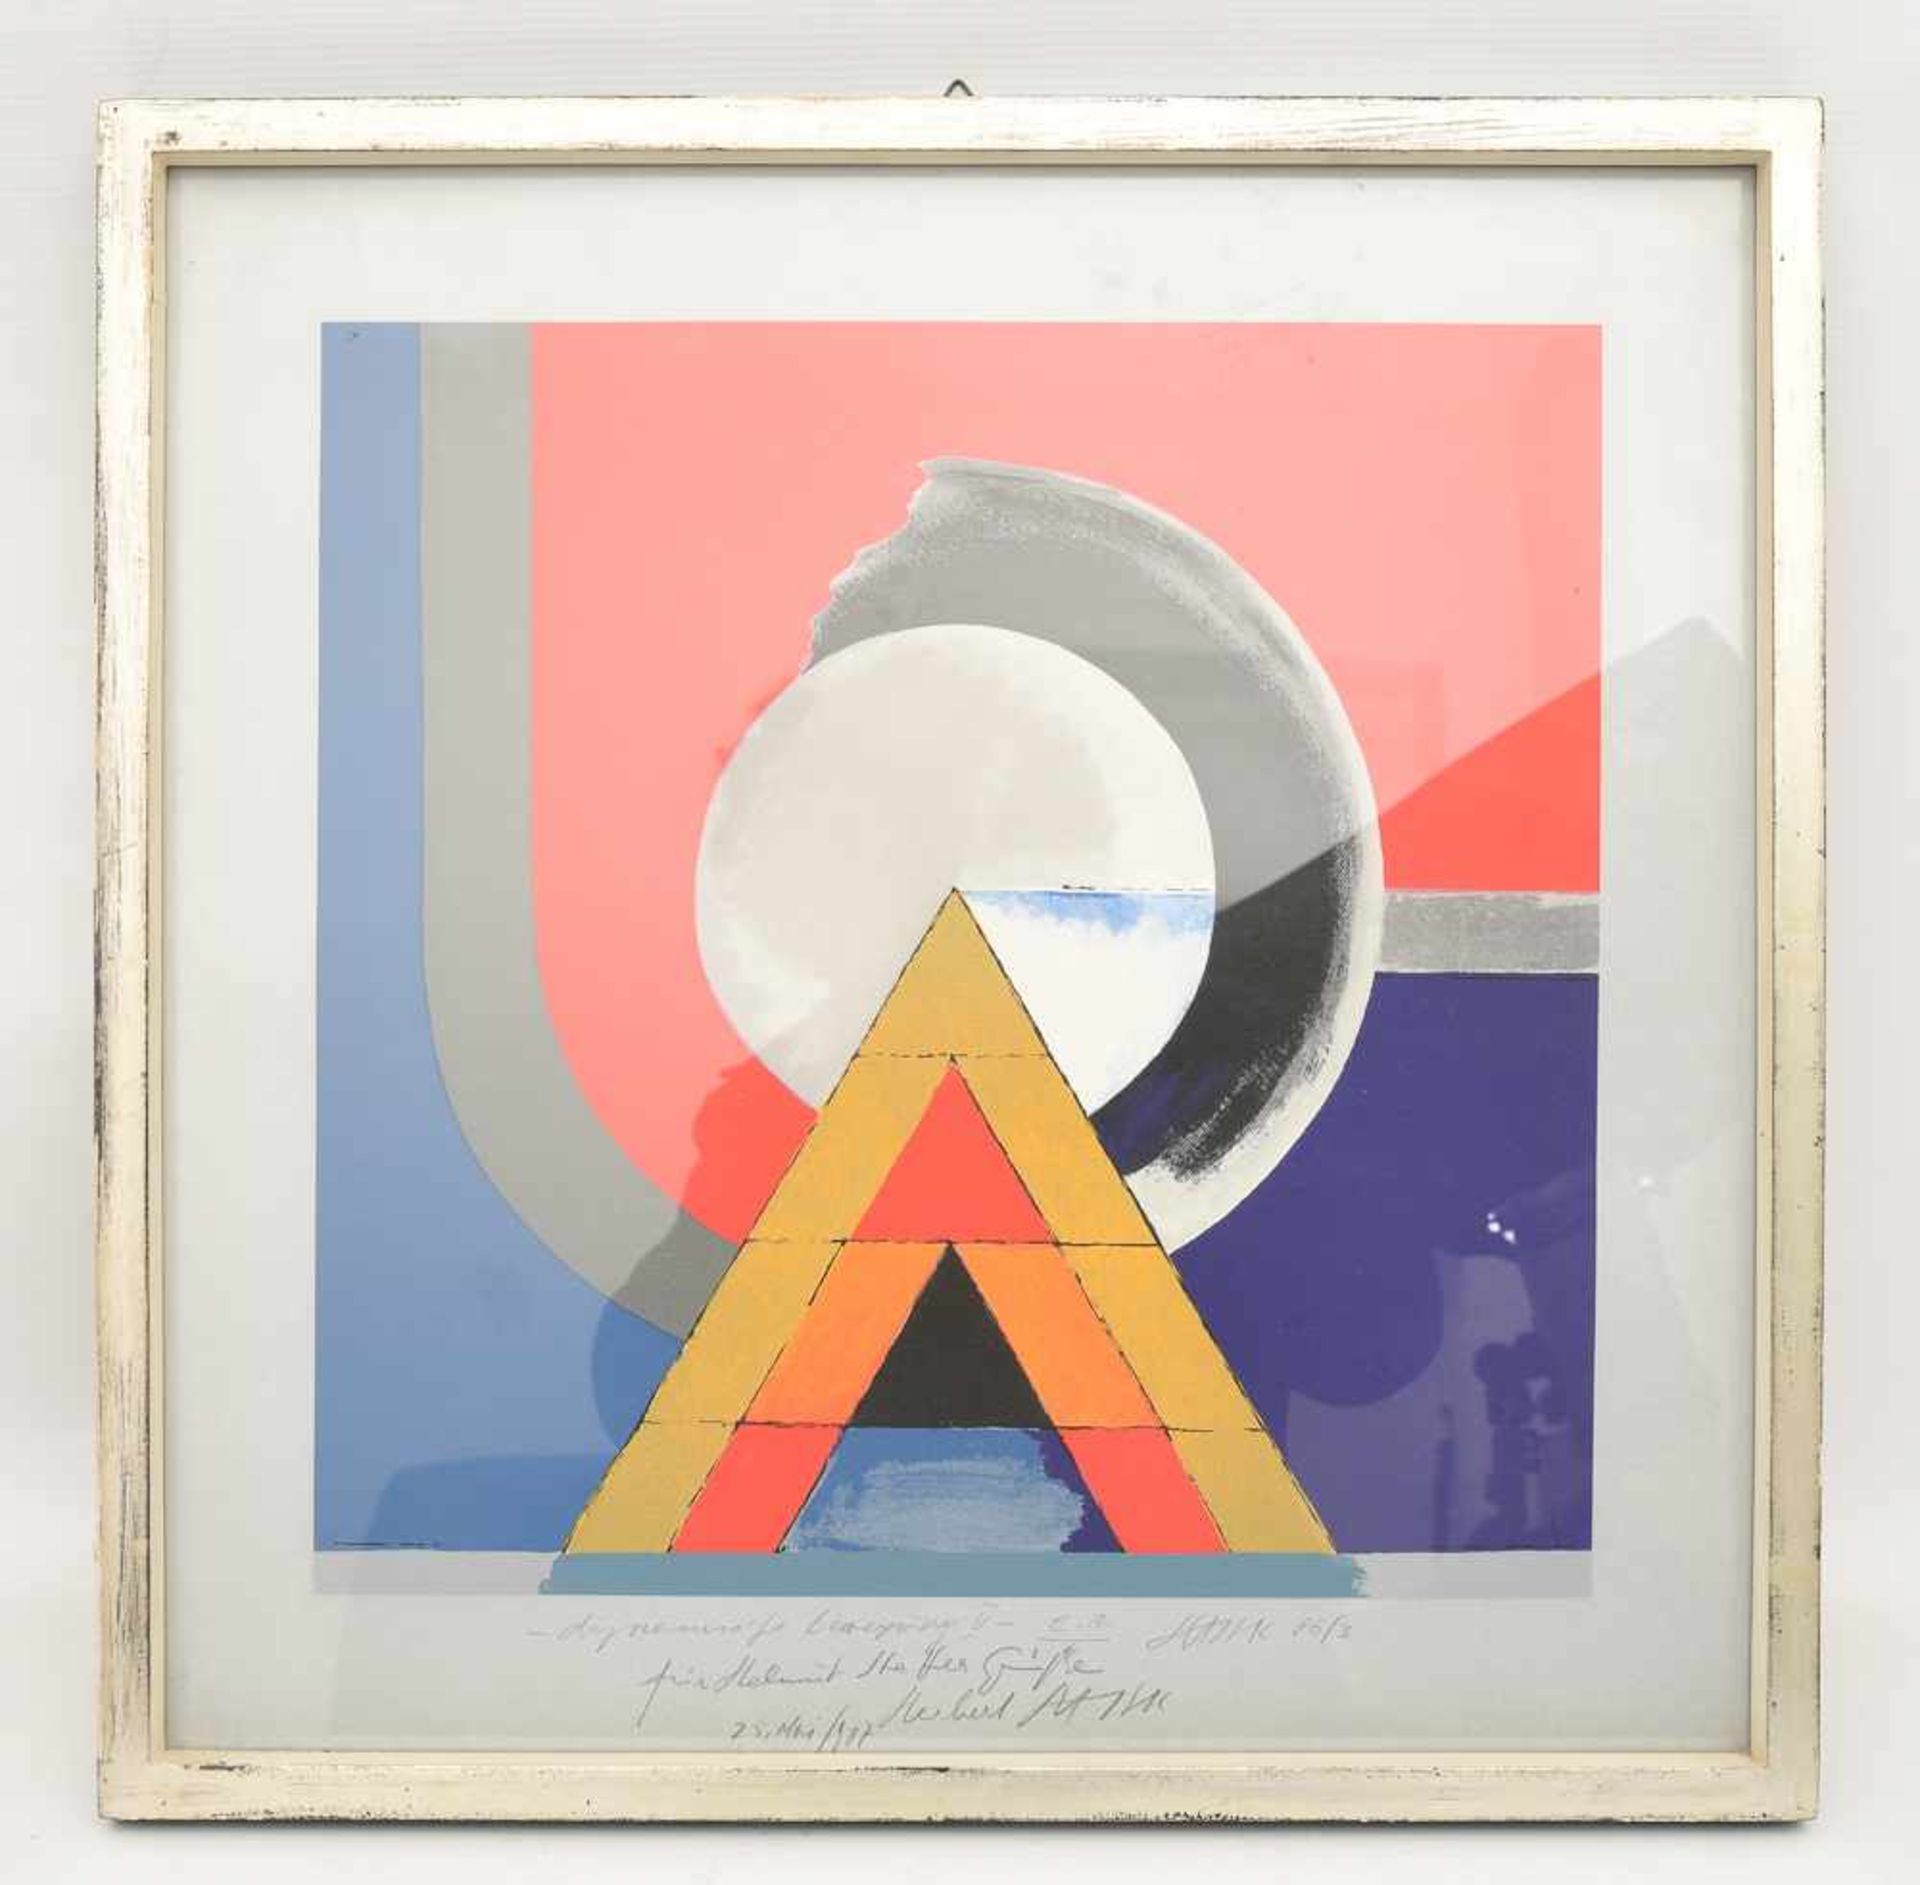 HERBERT HAJEK "Dynamische Bewegung V", polychrome Lithografie, hinter Glas gerahmt, signiert und